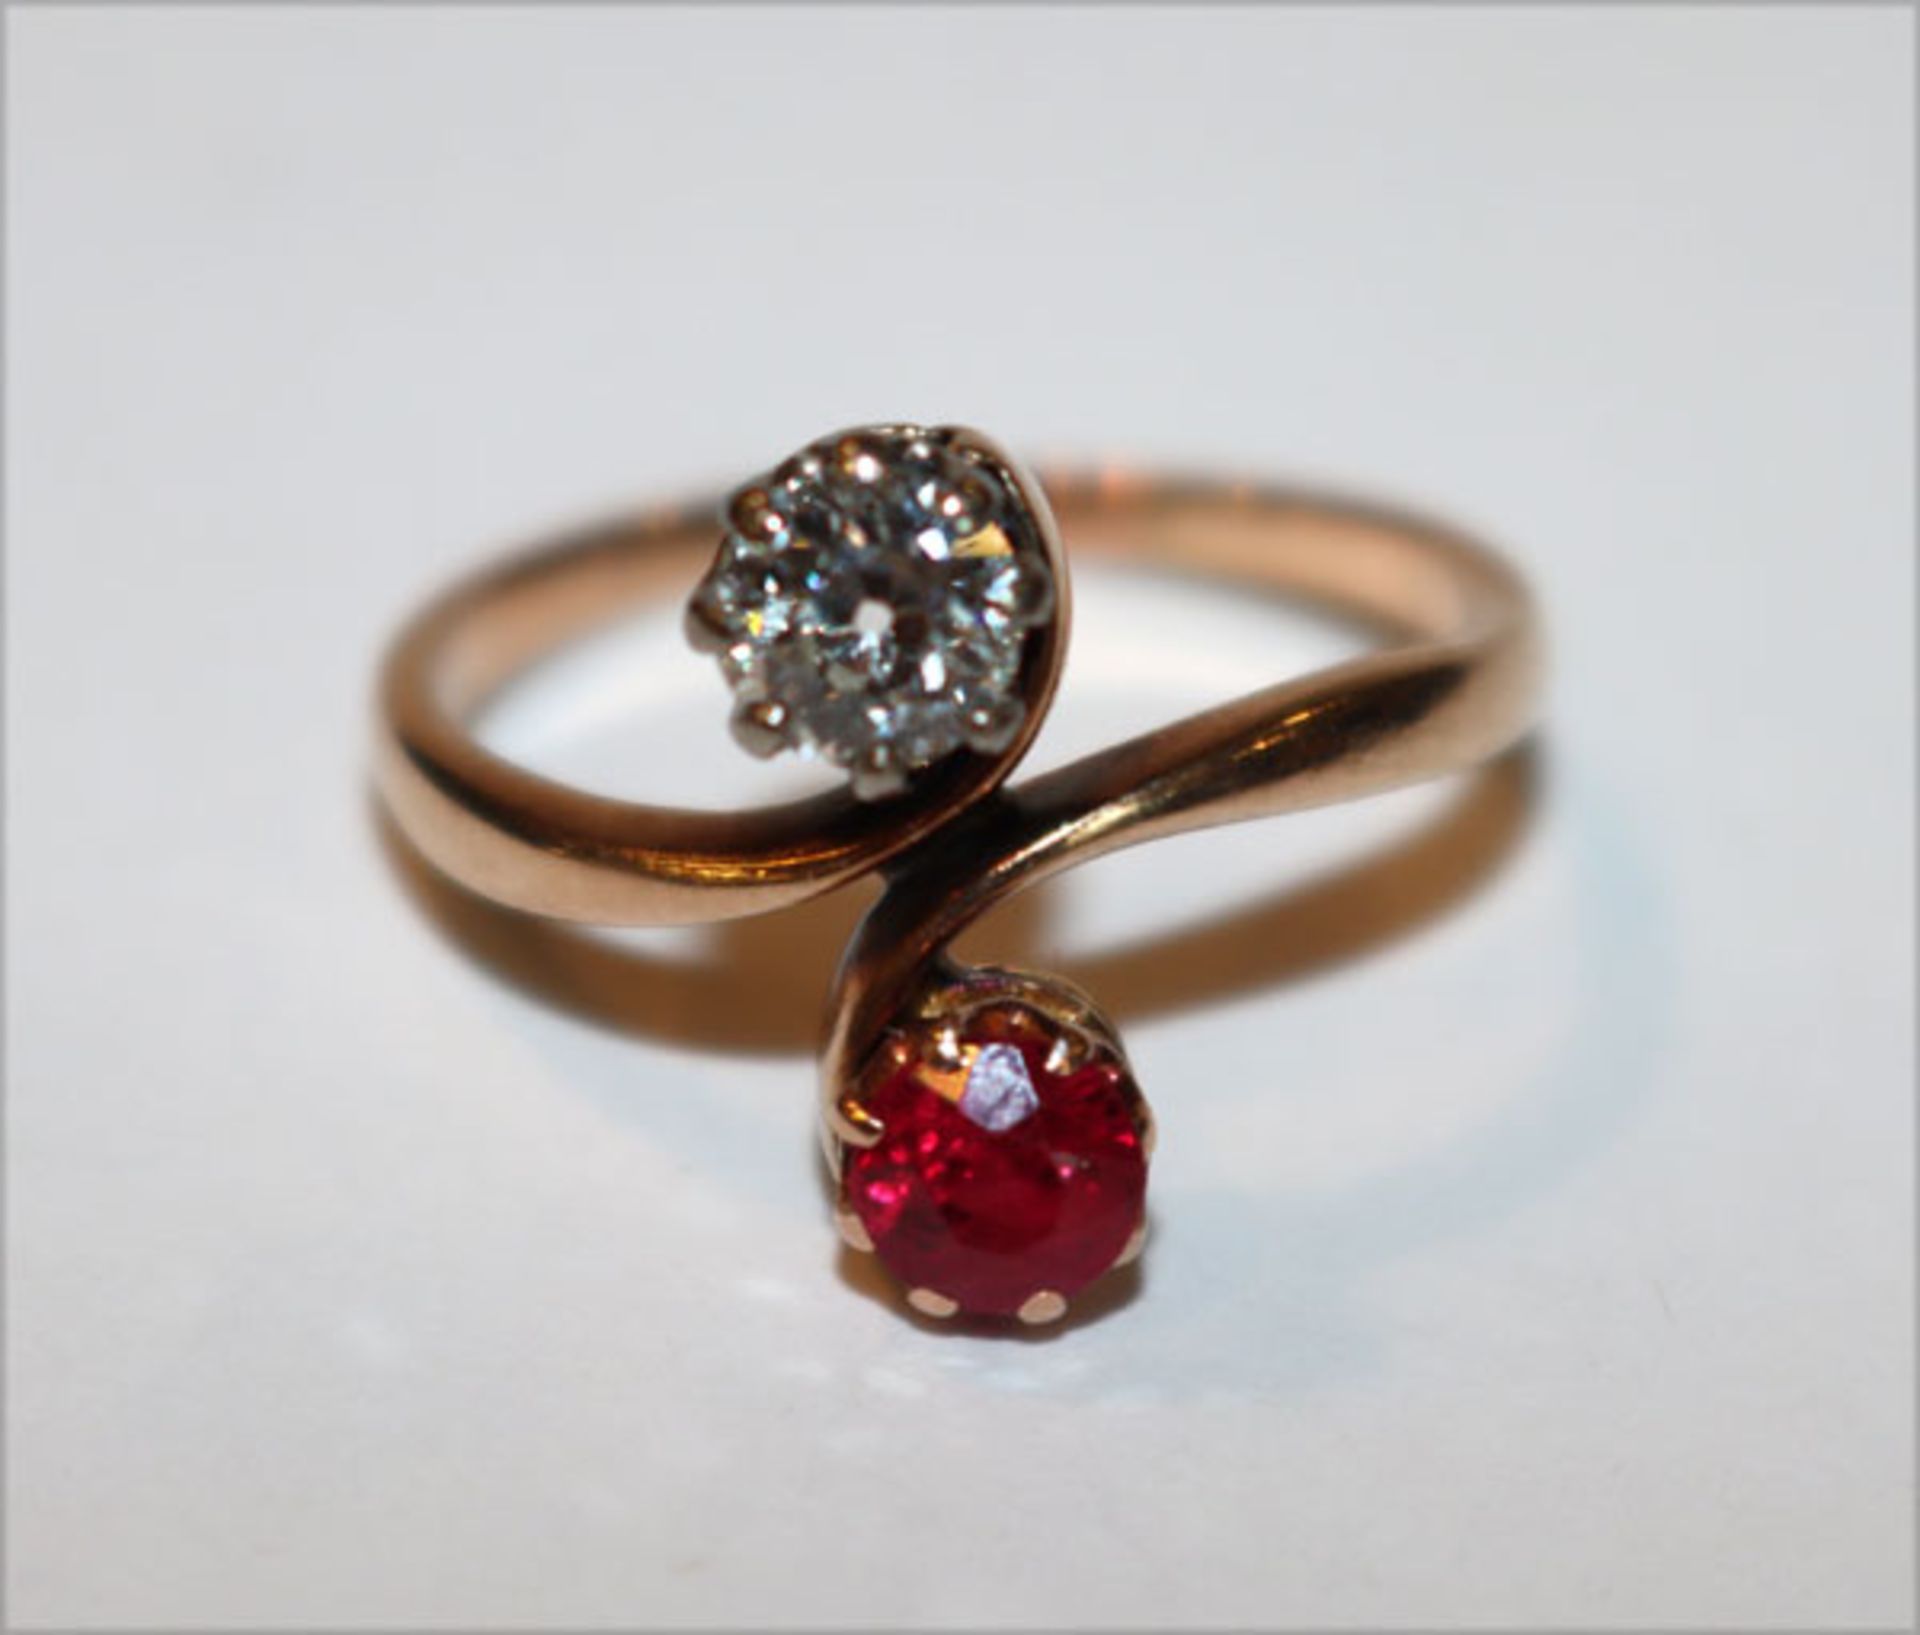 14 k (geprüft) Roségold Ring um 1900 mit Diamant, ca. 0,40 ct., und Rubin, Gr. 56